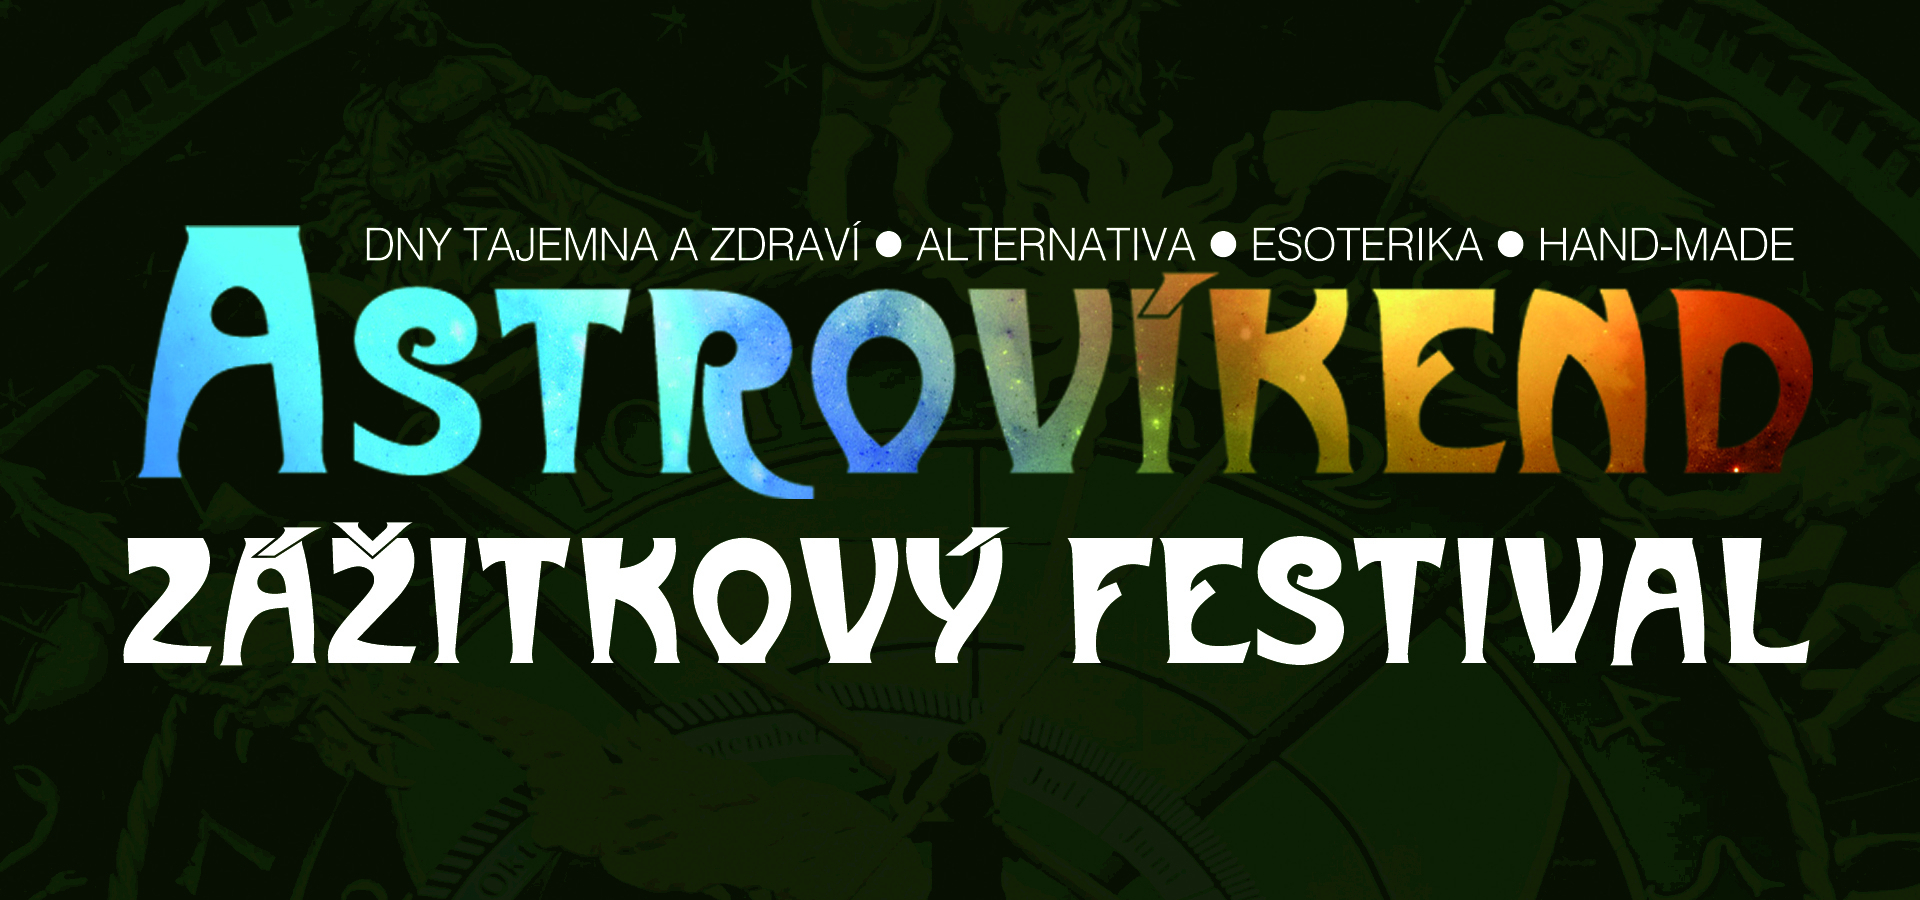 Astrovíkend - zážitkový festival